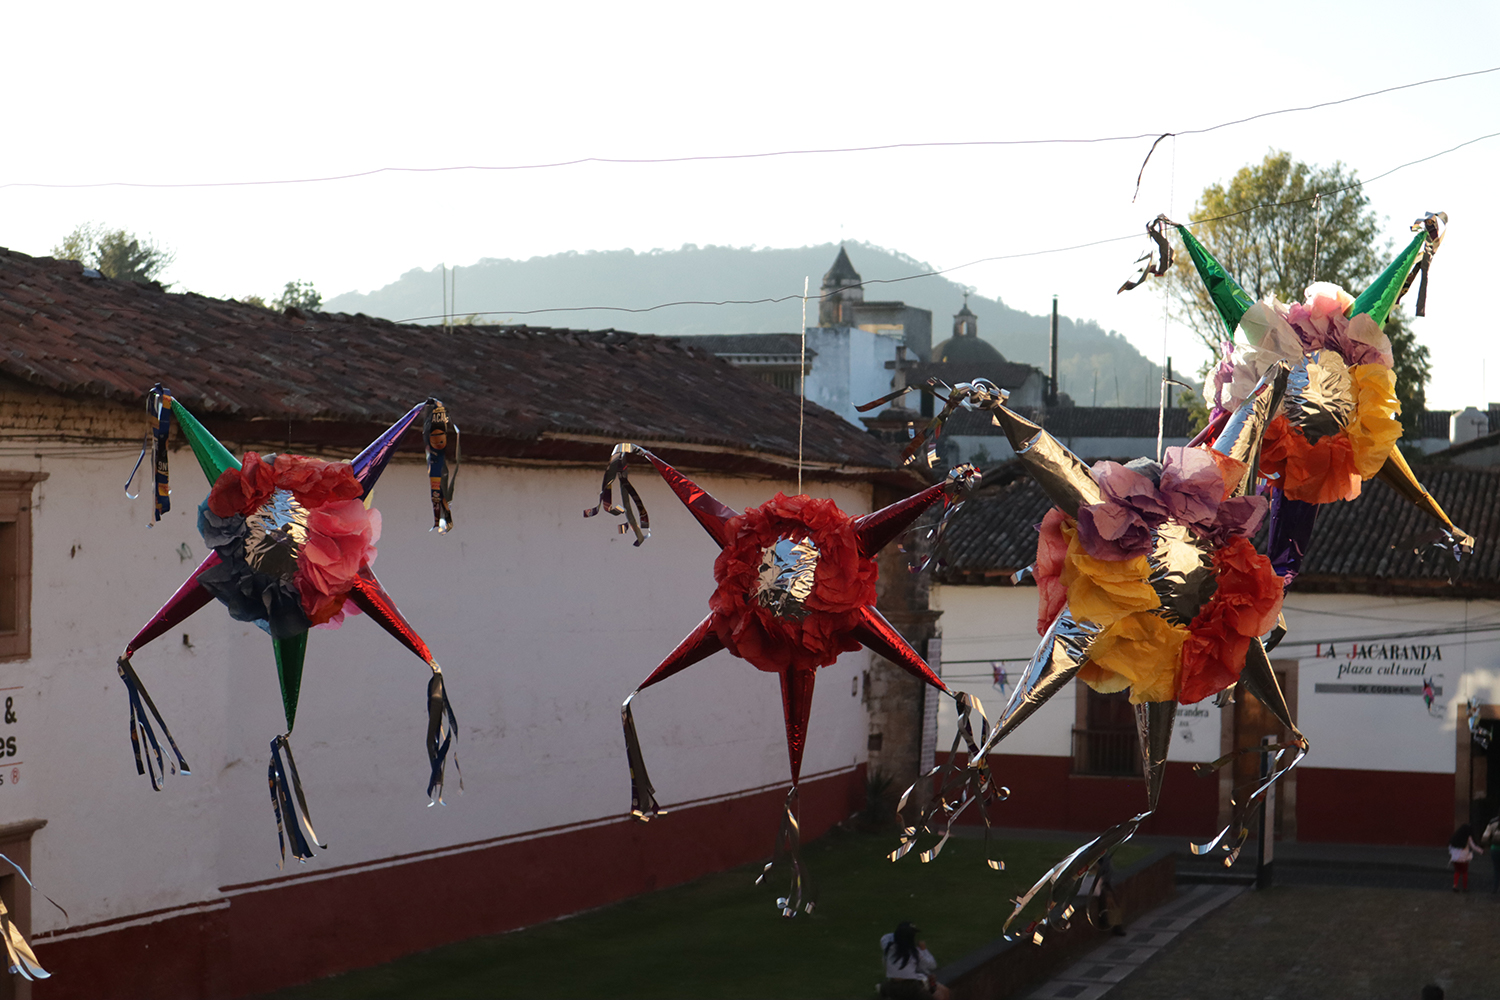 Piñatas in Patzcuaro - Michoacán, México